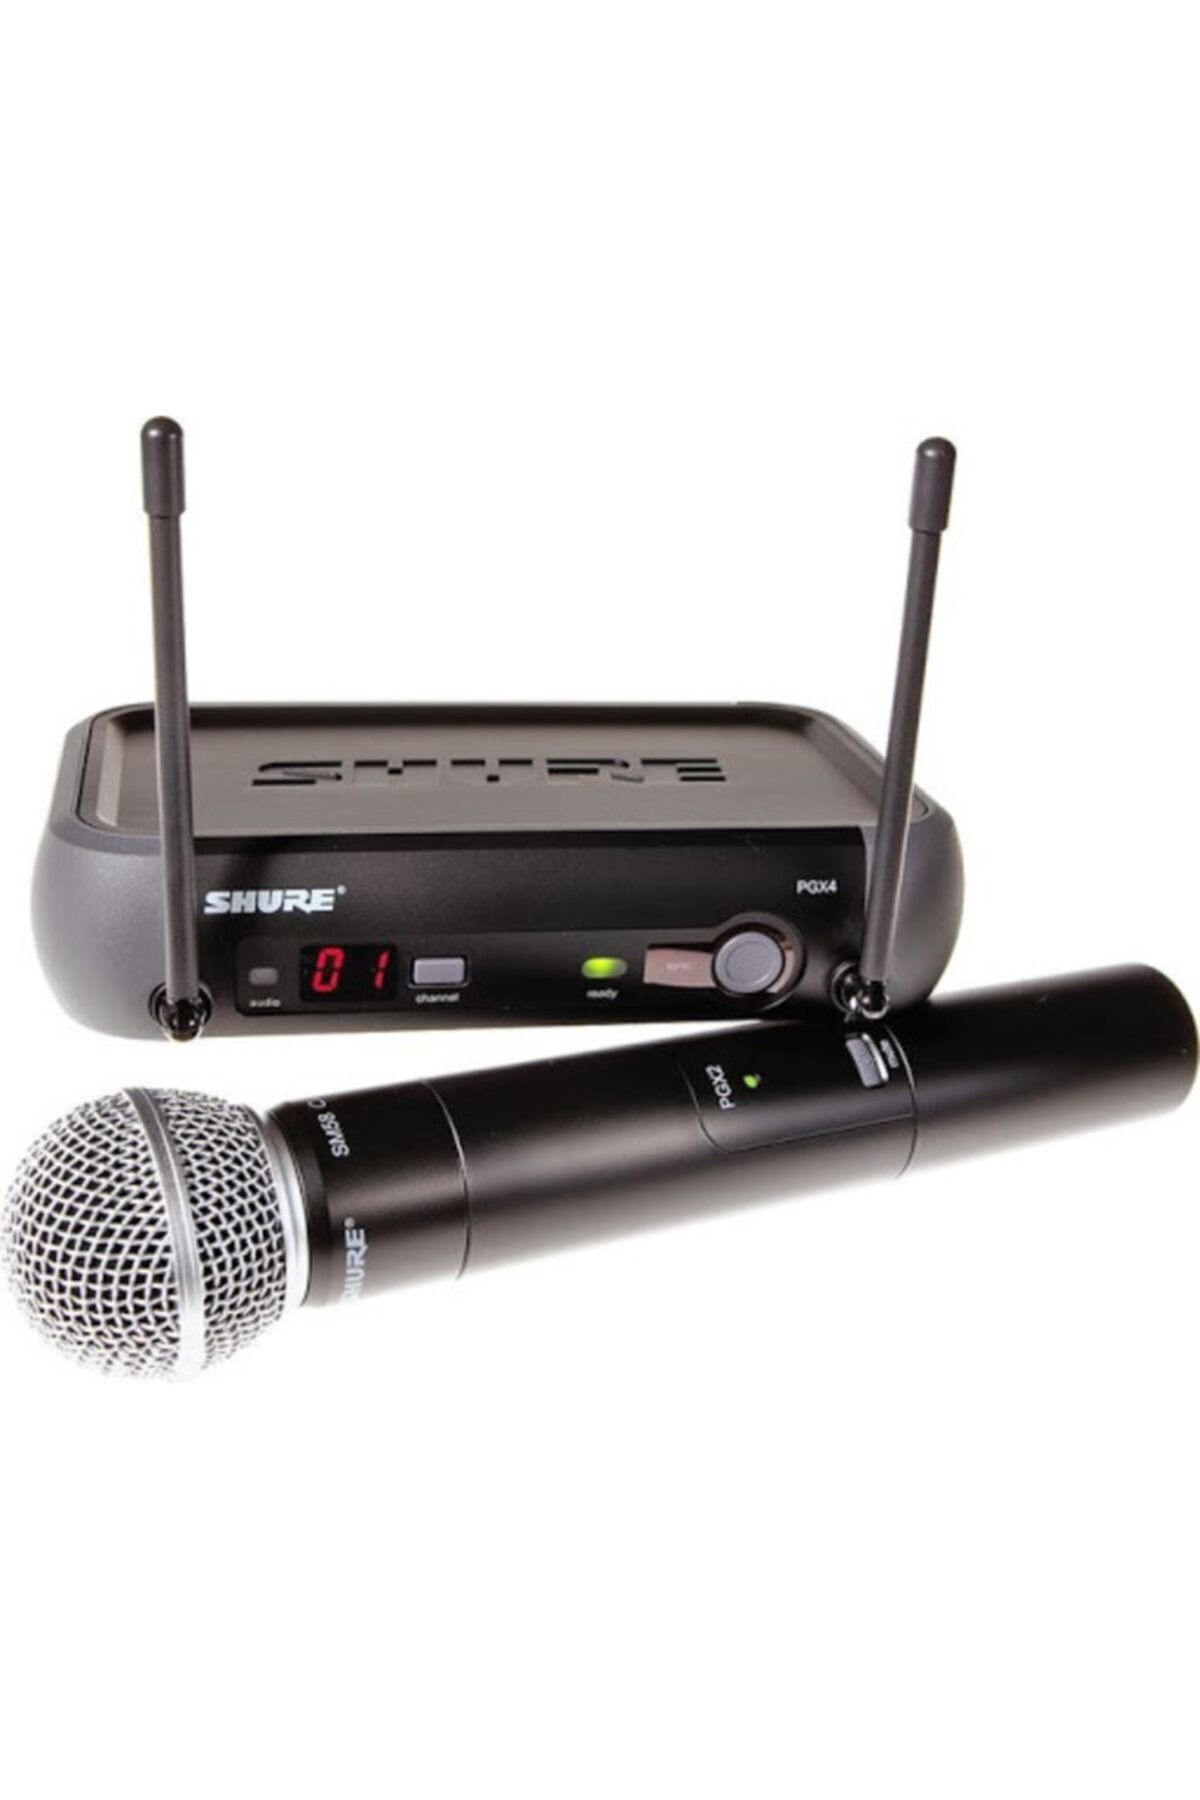 Shure Vocal Pgx Wireless System Sm58